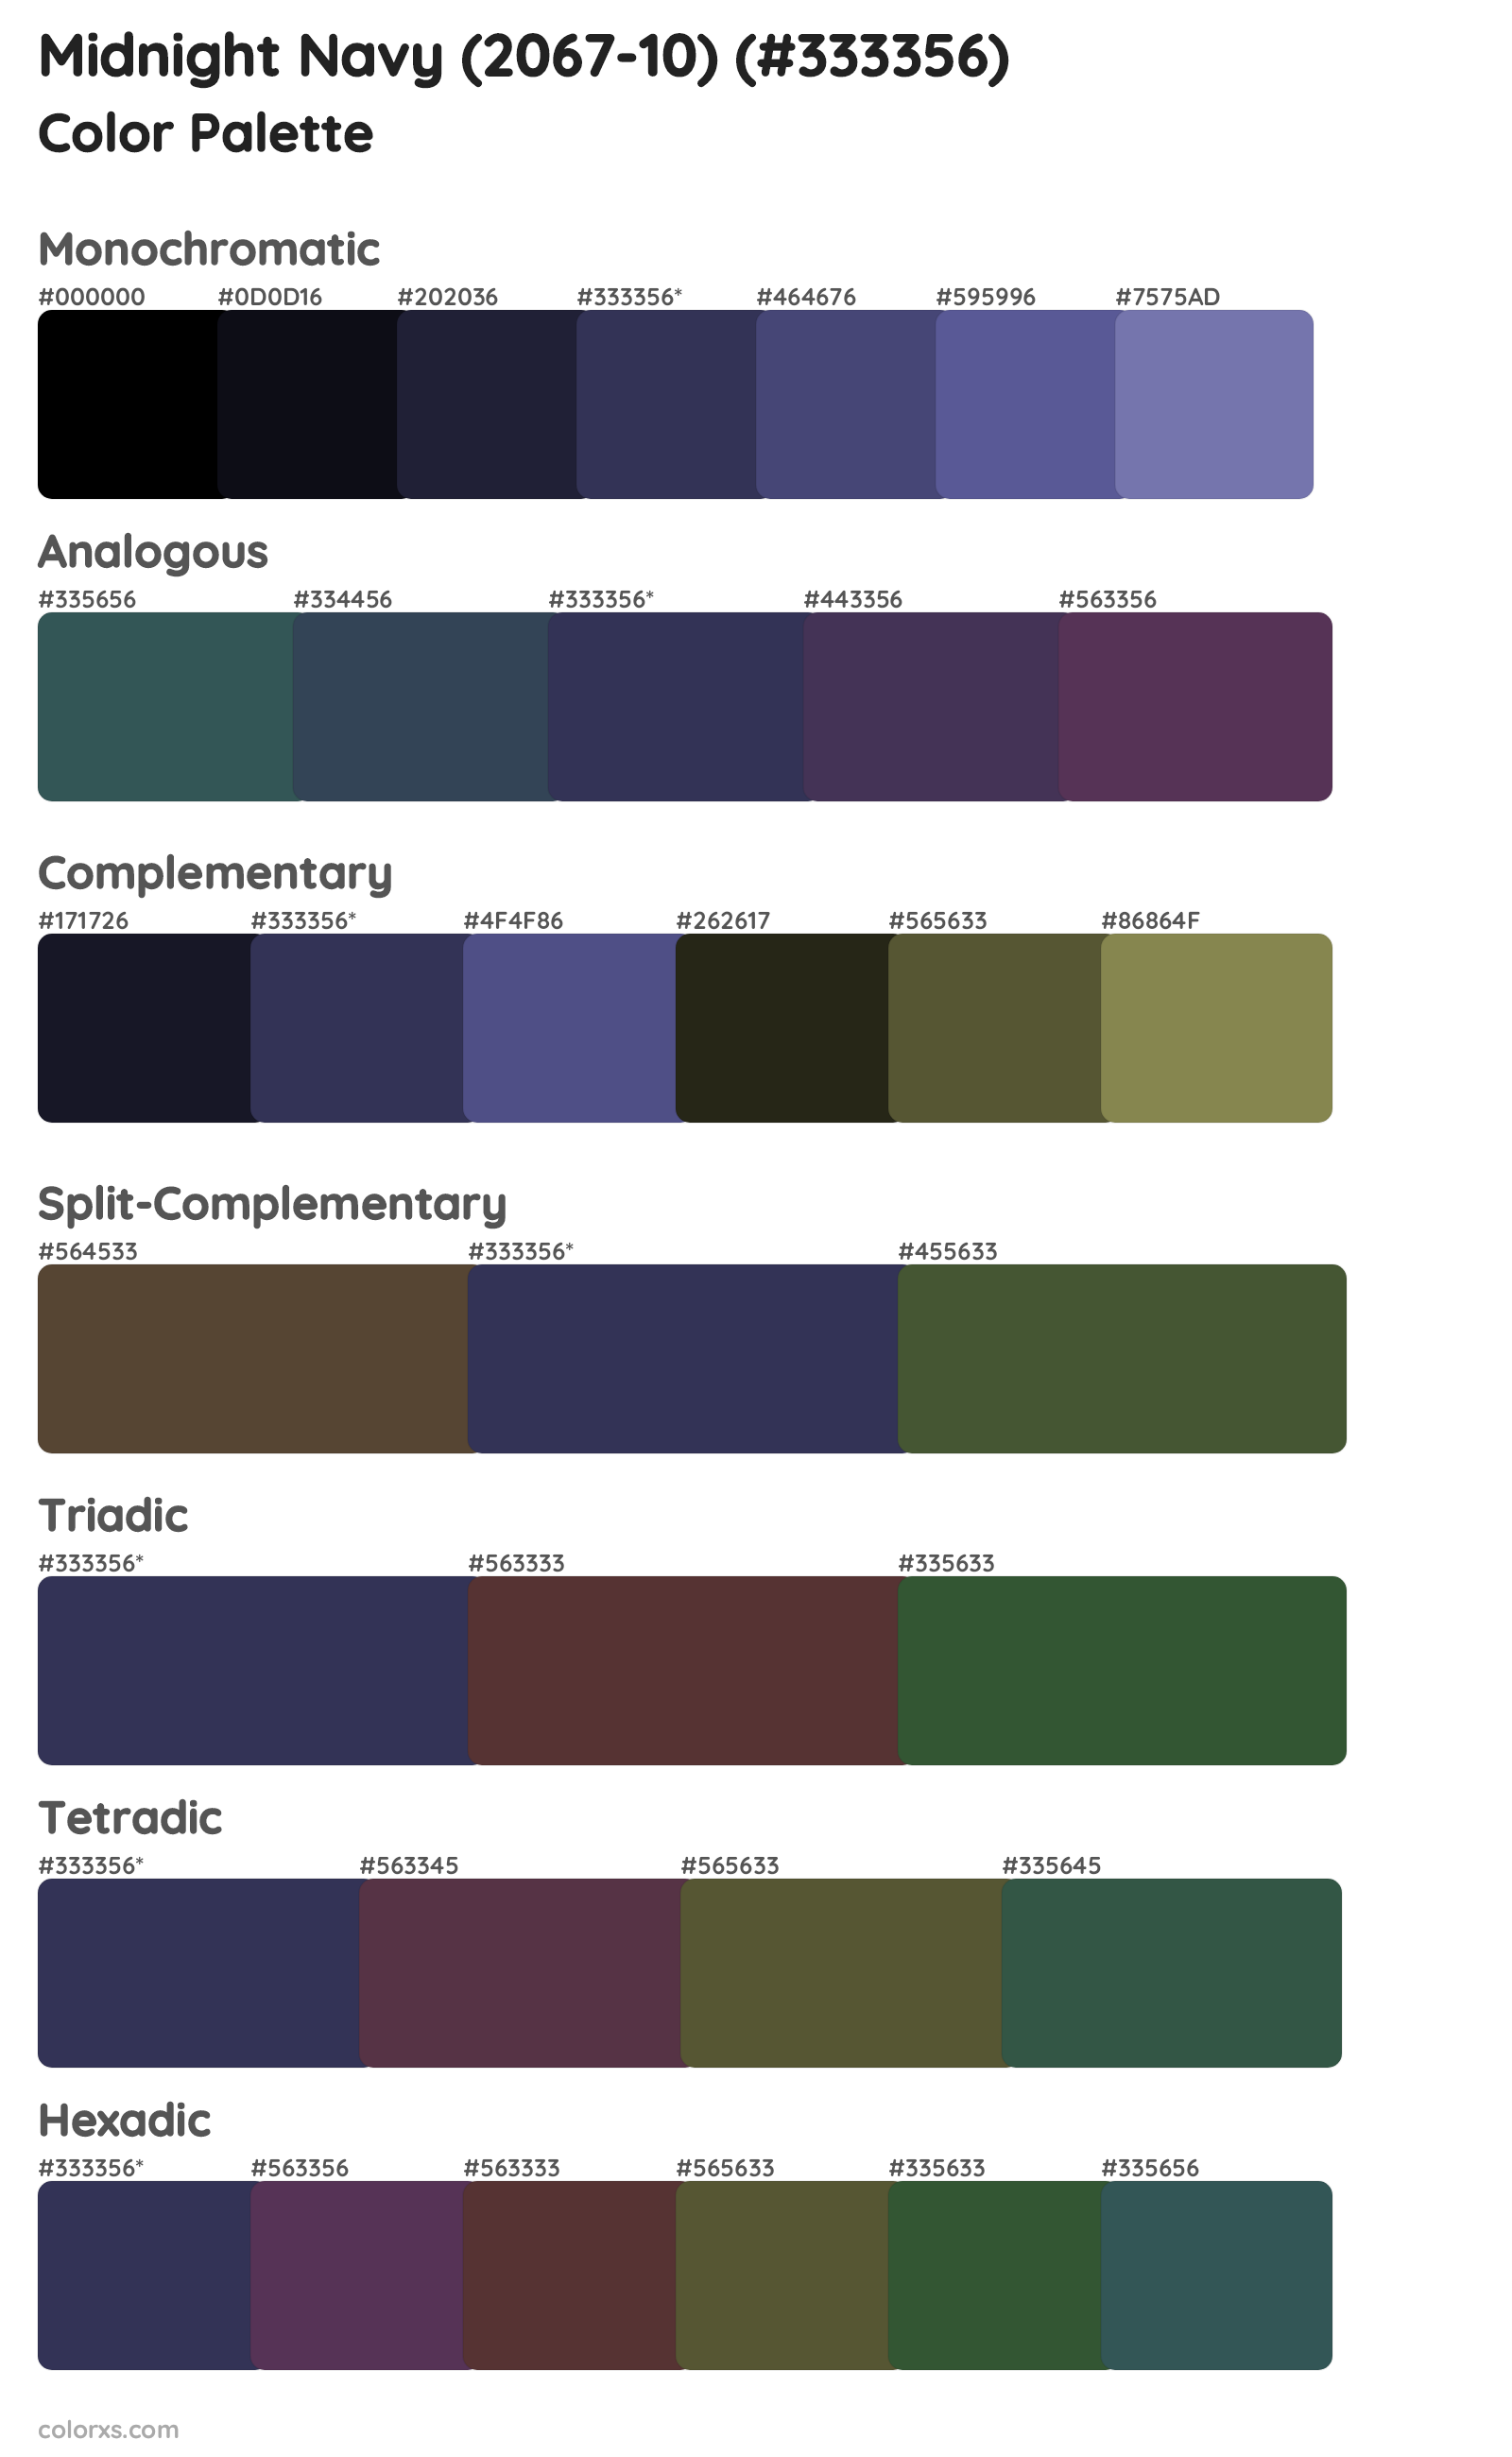 Midnight Navy (2067-10) Color Scheme Palettes